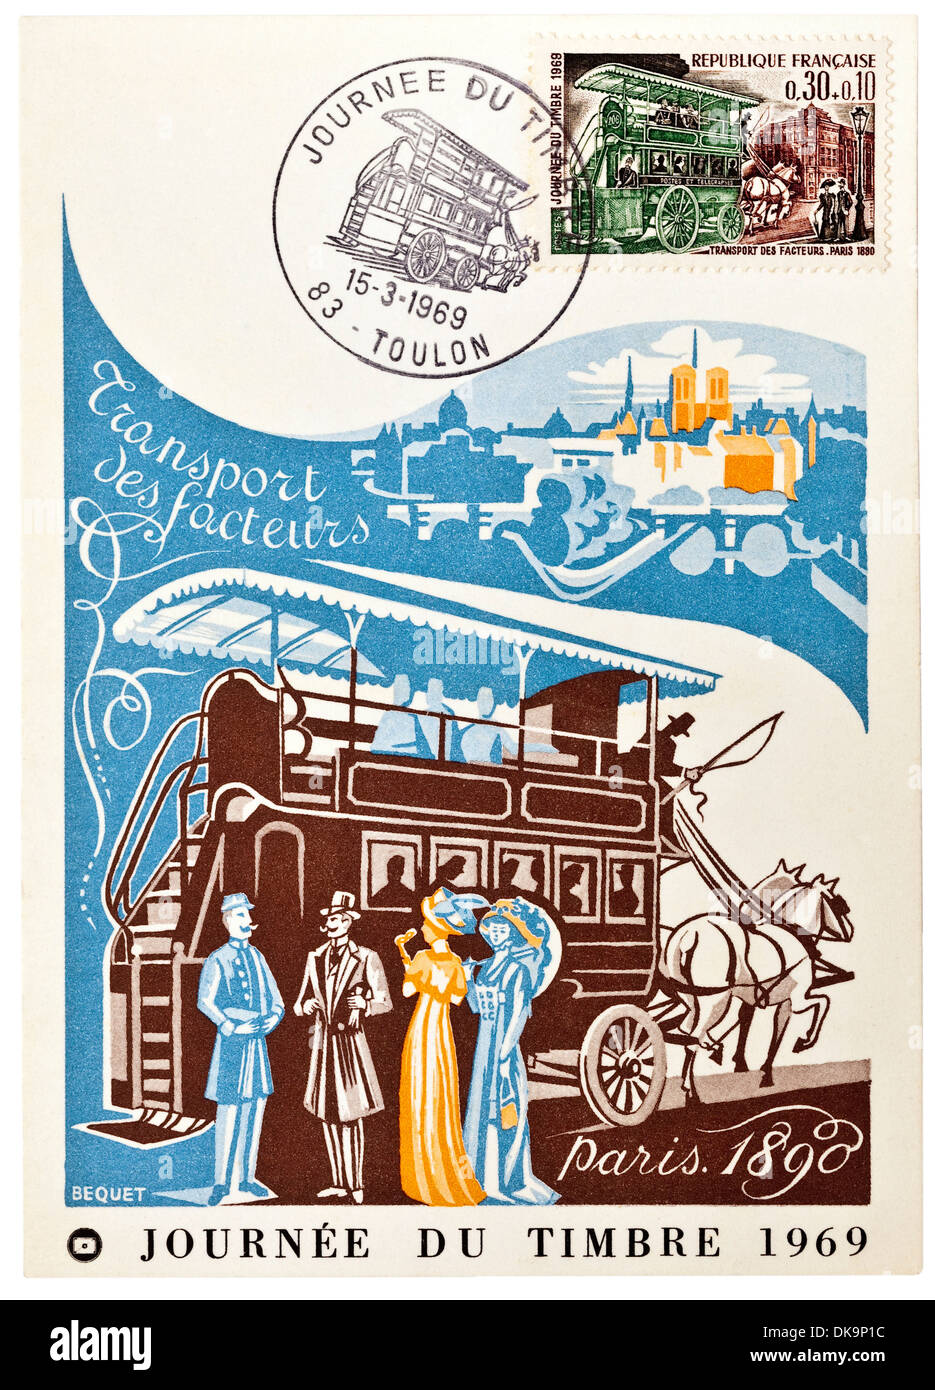 1969 cartolina francese raffigurante a cavallo il bus postale a Parigi 1890 - 'Journée du Timbre" (Giornata del francobollo). Foto Stock